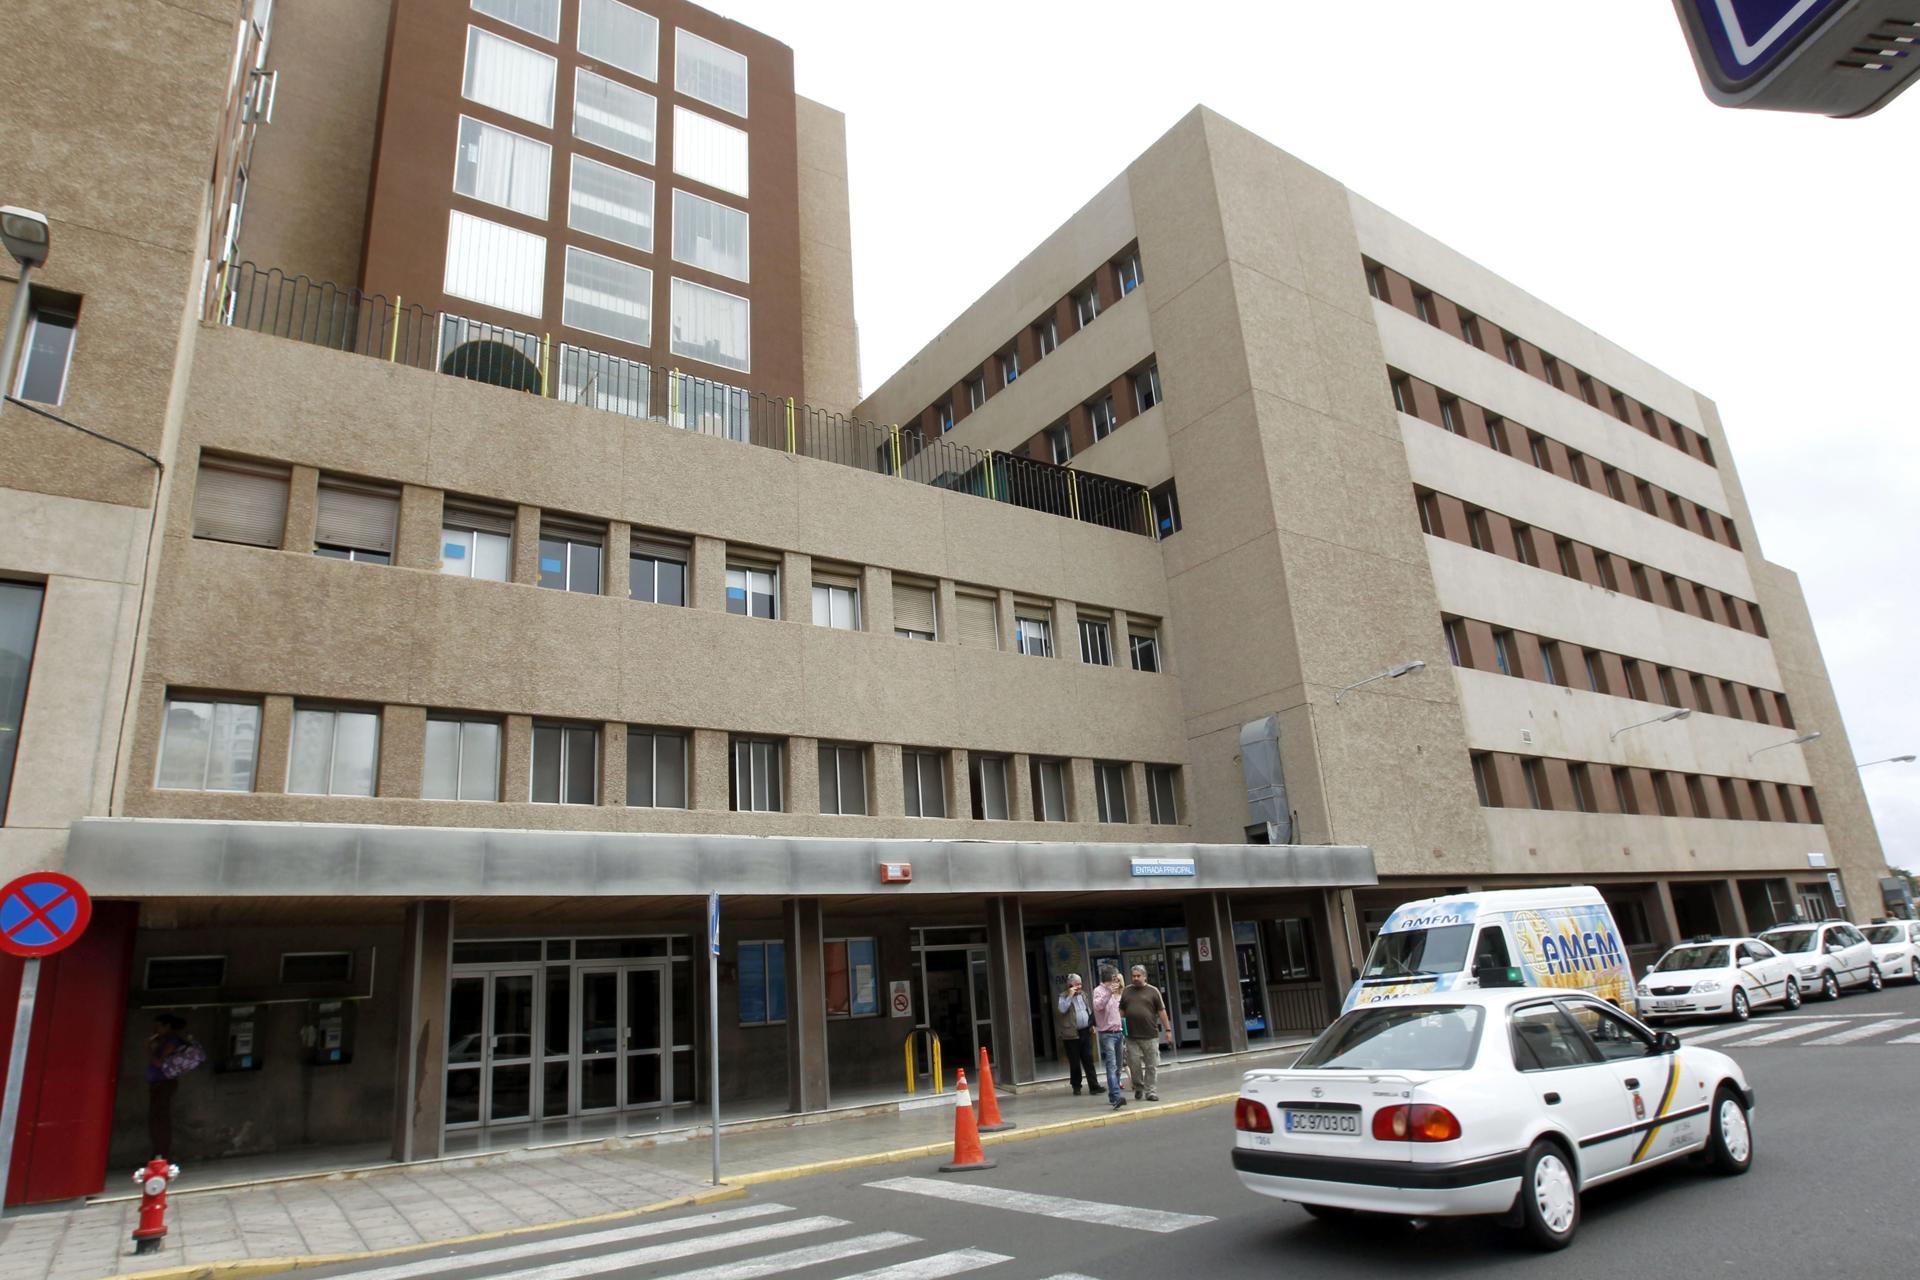 Foto de archivo de un centro hospitalario de Las Palmas. EFE